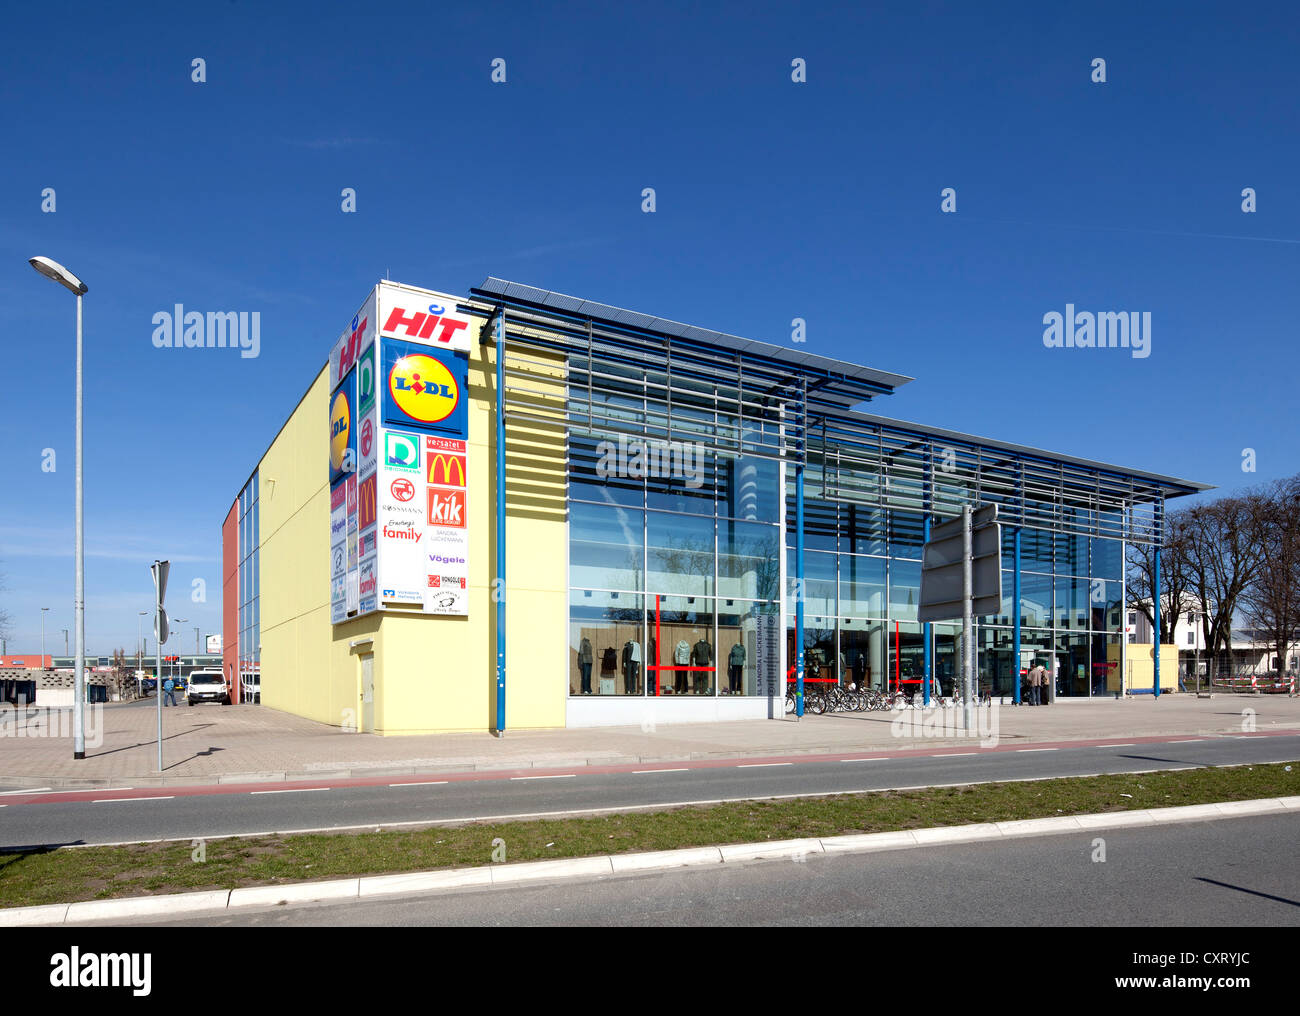 City-Center shopping mall, Soest, North Rhine-Westphalia, Germany, Europe, PublicGround Stock Photo